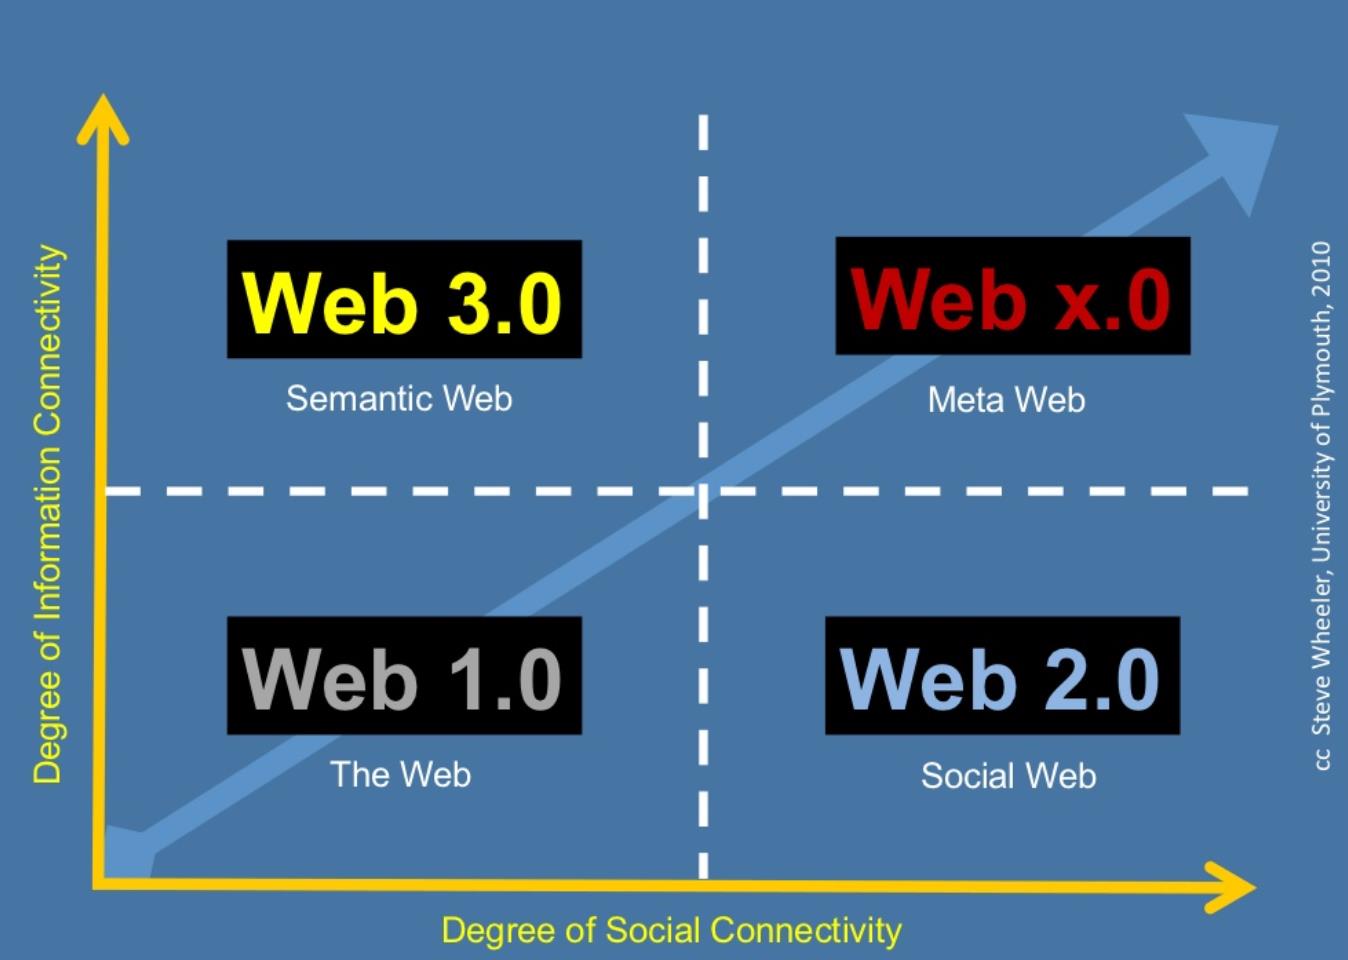 Web x.0